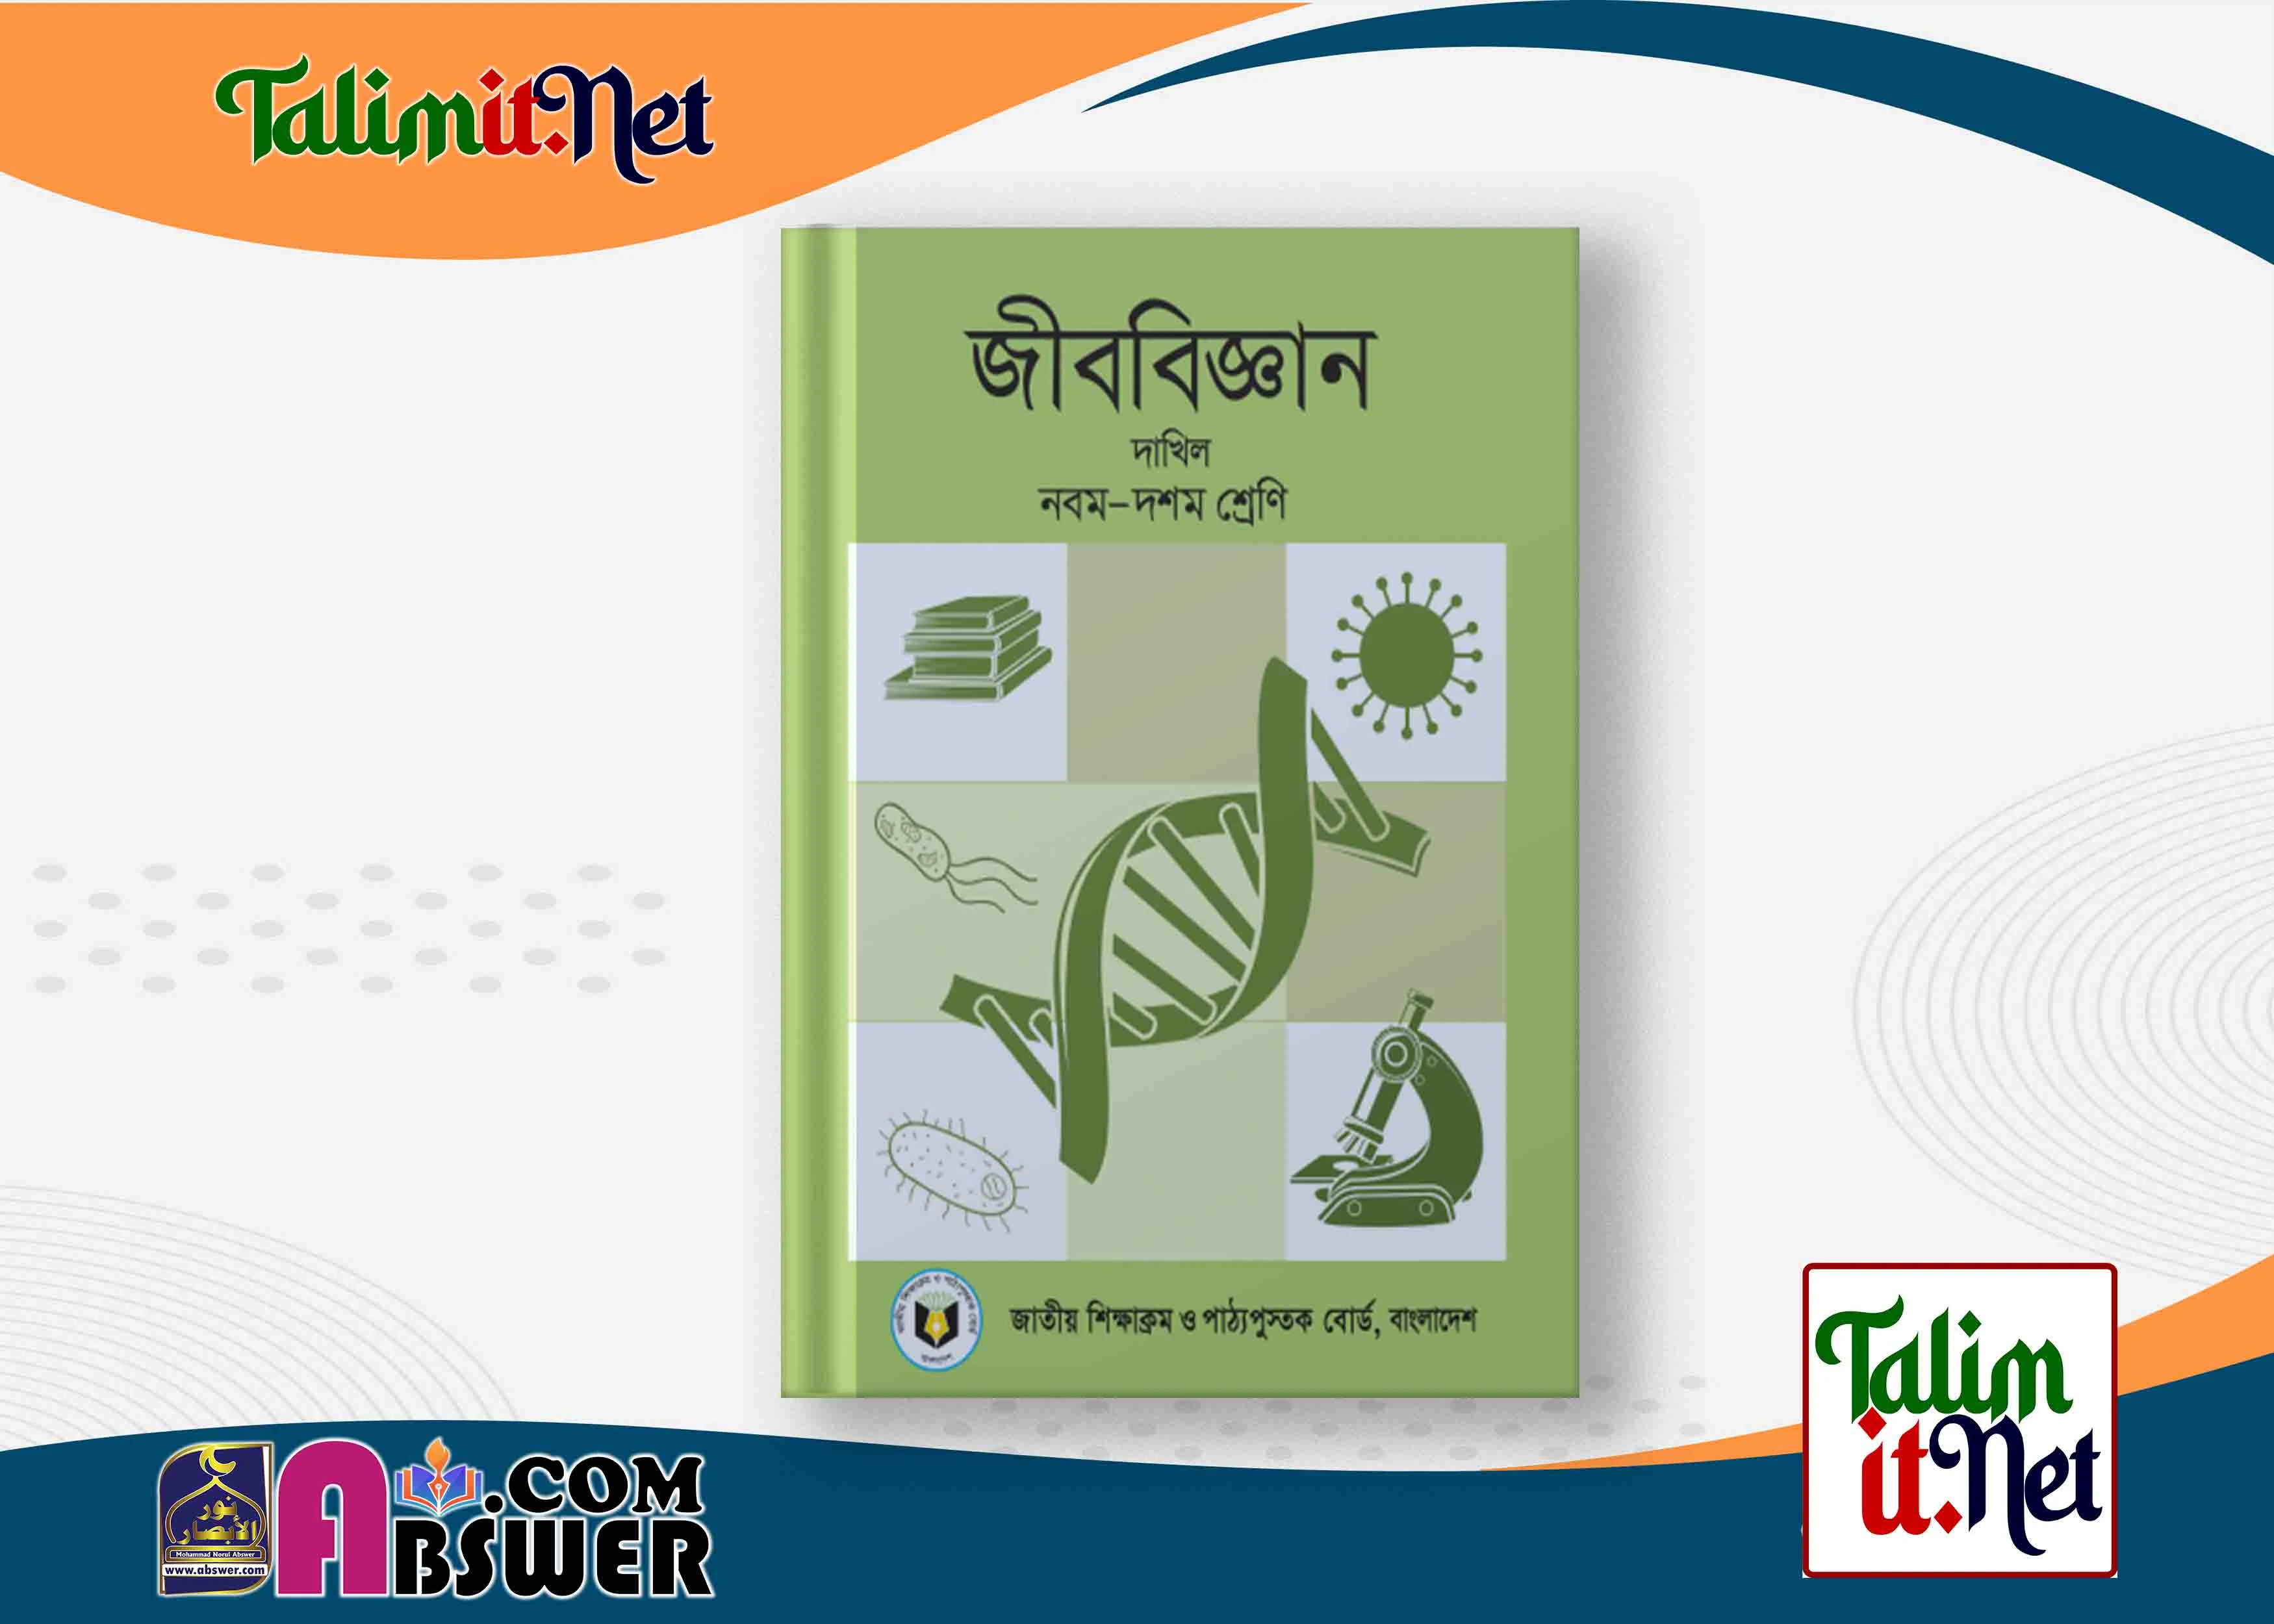 জীব বিজ্ঞান - দাখিল ৯ম - ১০ম  শ্রেণির মাদ্রাসার পাঠ্যবই পিডিএফ ২০২৩ | Biology - Dakhil Class 9-10 Book 2023 NCTB Madrasha Pdf